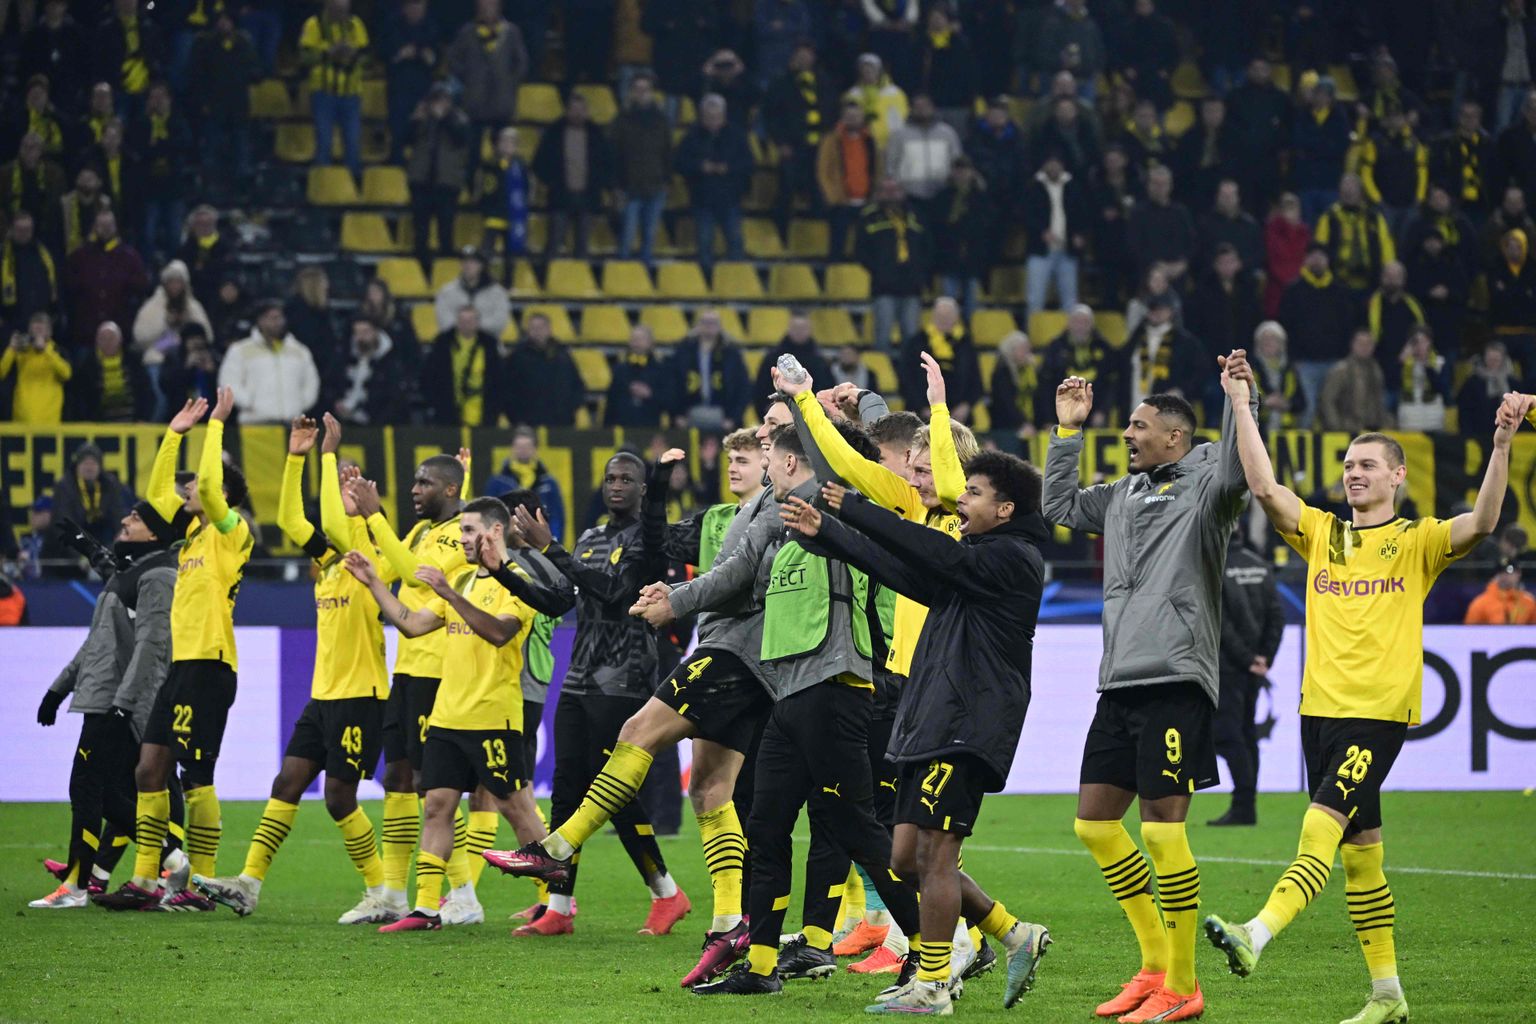 Dortmundi mängijad said koduväljakul rõõmustada, ent Londonis ootab neid veel raske kohtumine.